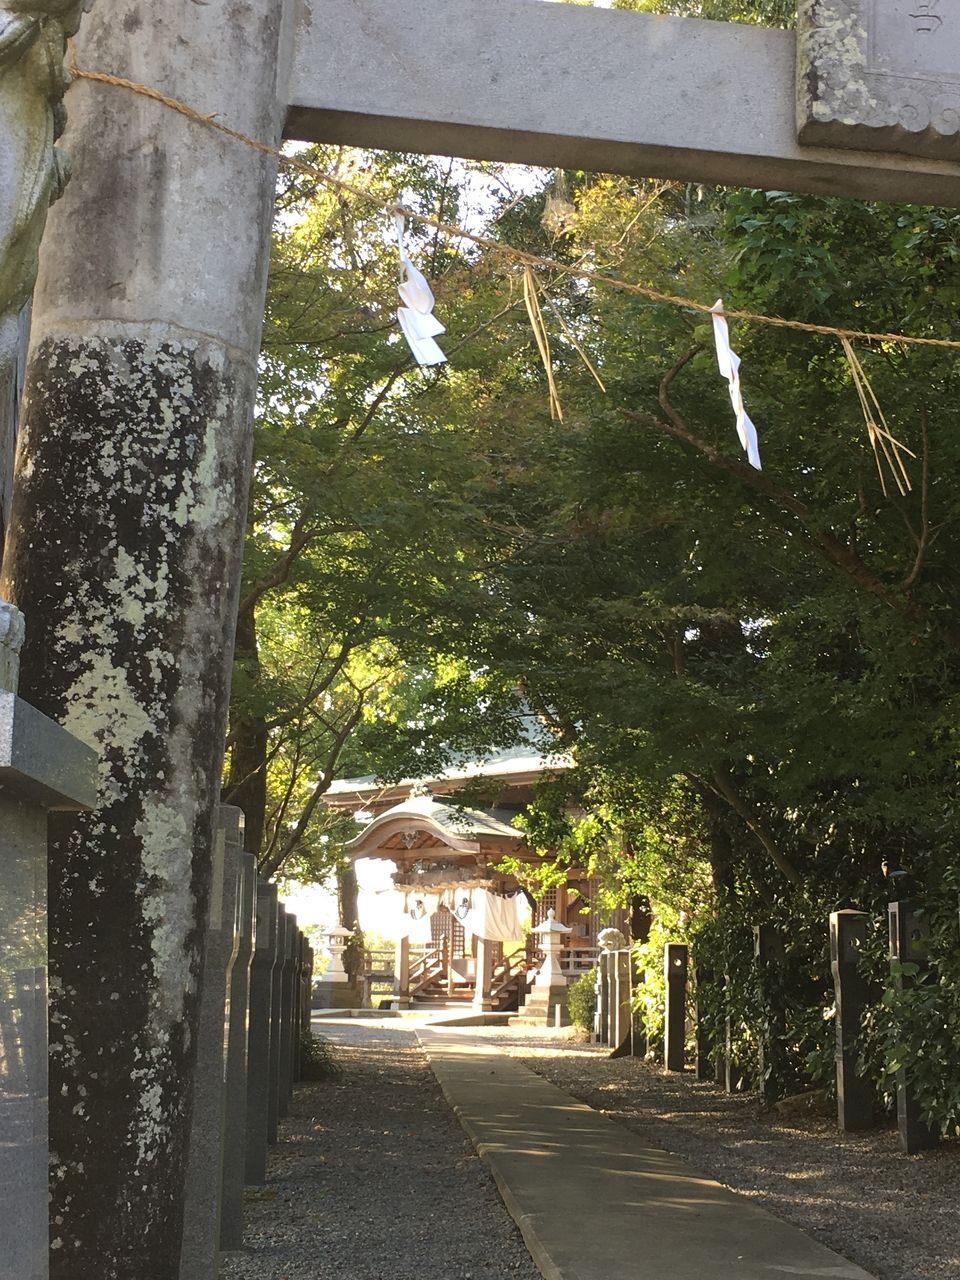 静けさの中に佇む浮島熊野座神社には、心の安らぎをあたえてくれる、ひとときがあります。時間がある時に立ち寄り、雄大な時のながれを感じ癒されてみませんか。